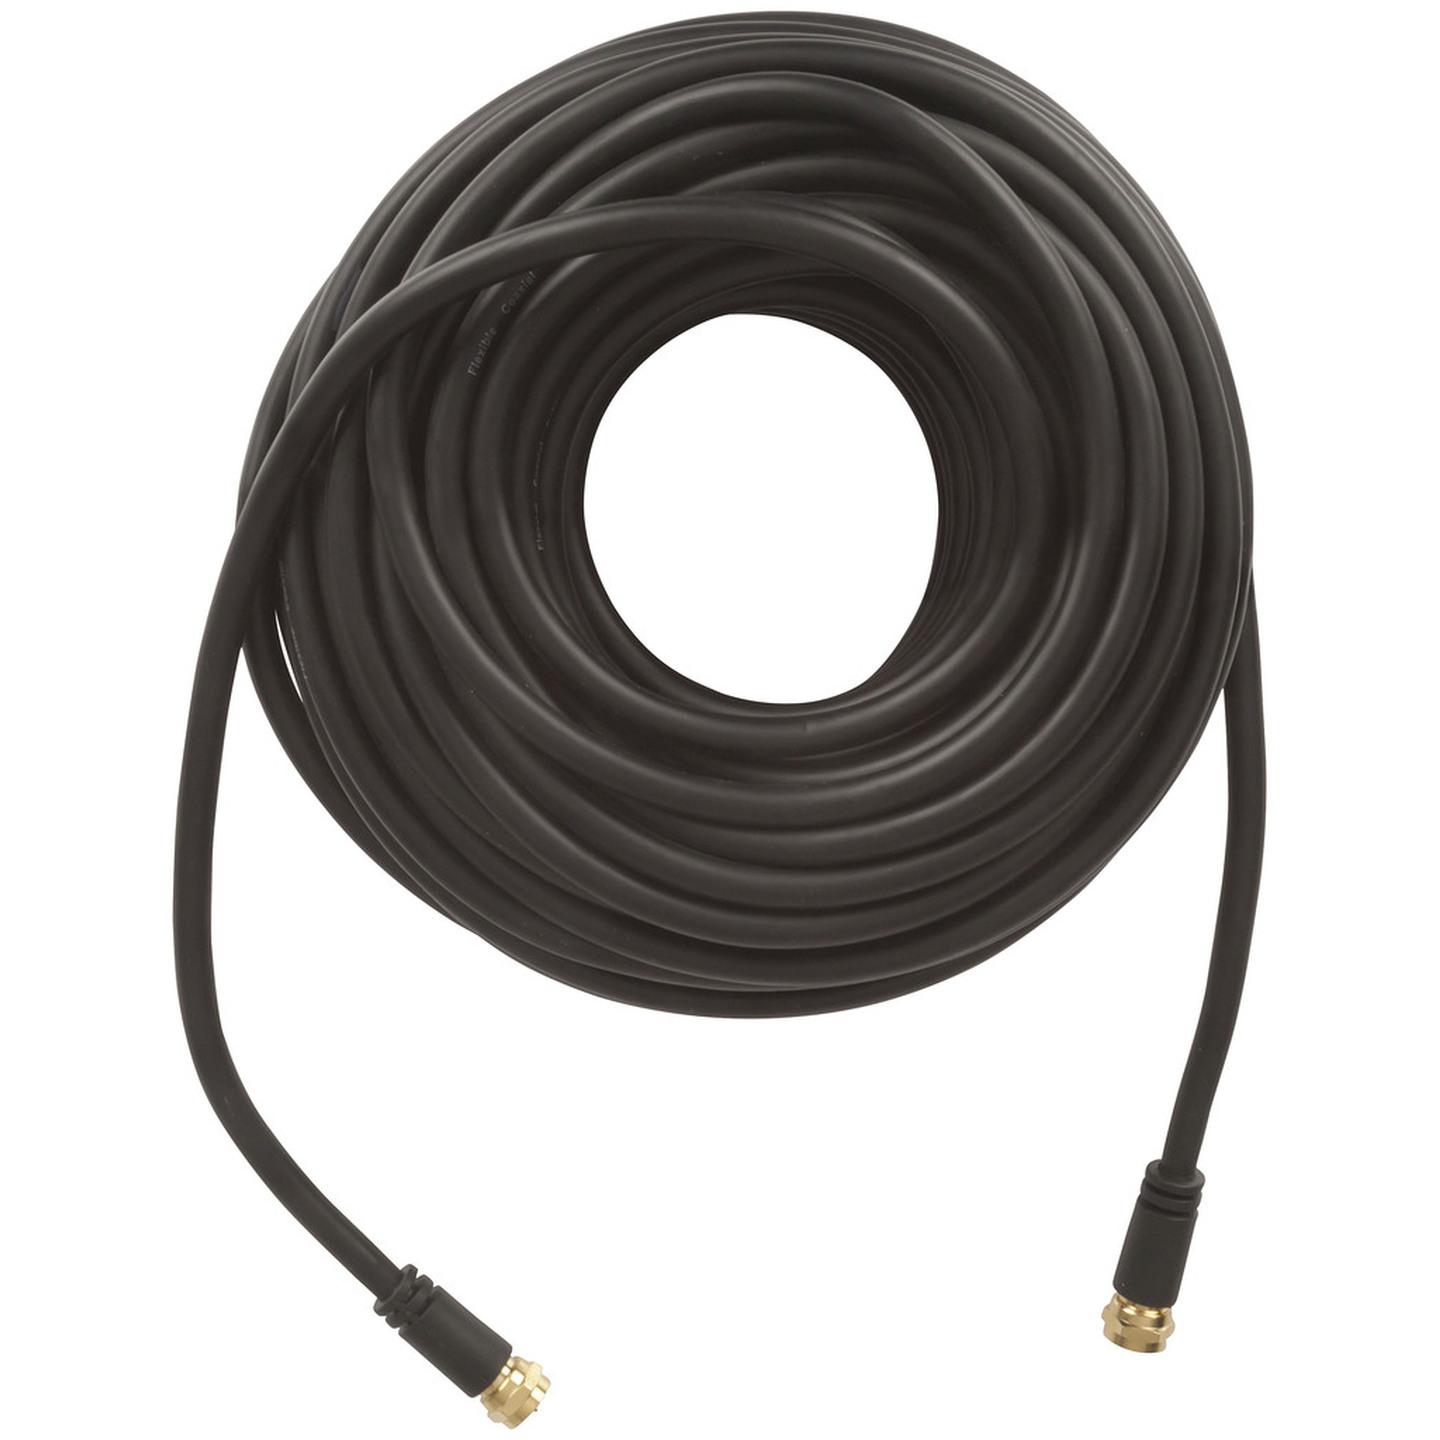 Concord 20m Flexible F Plug to F Plug Coax Cable